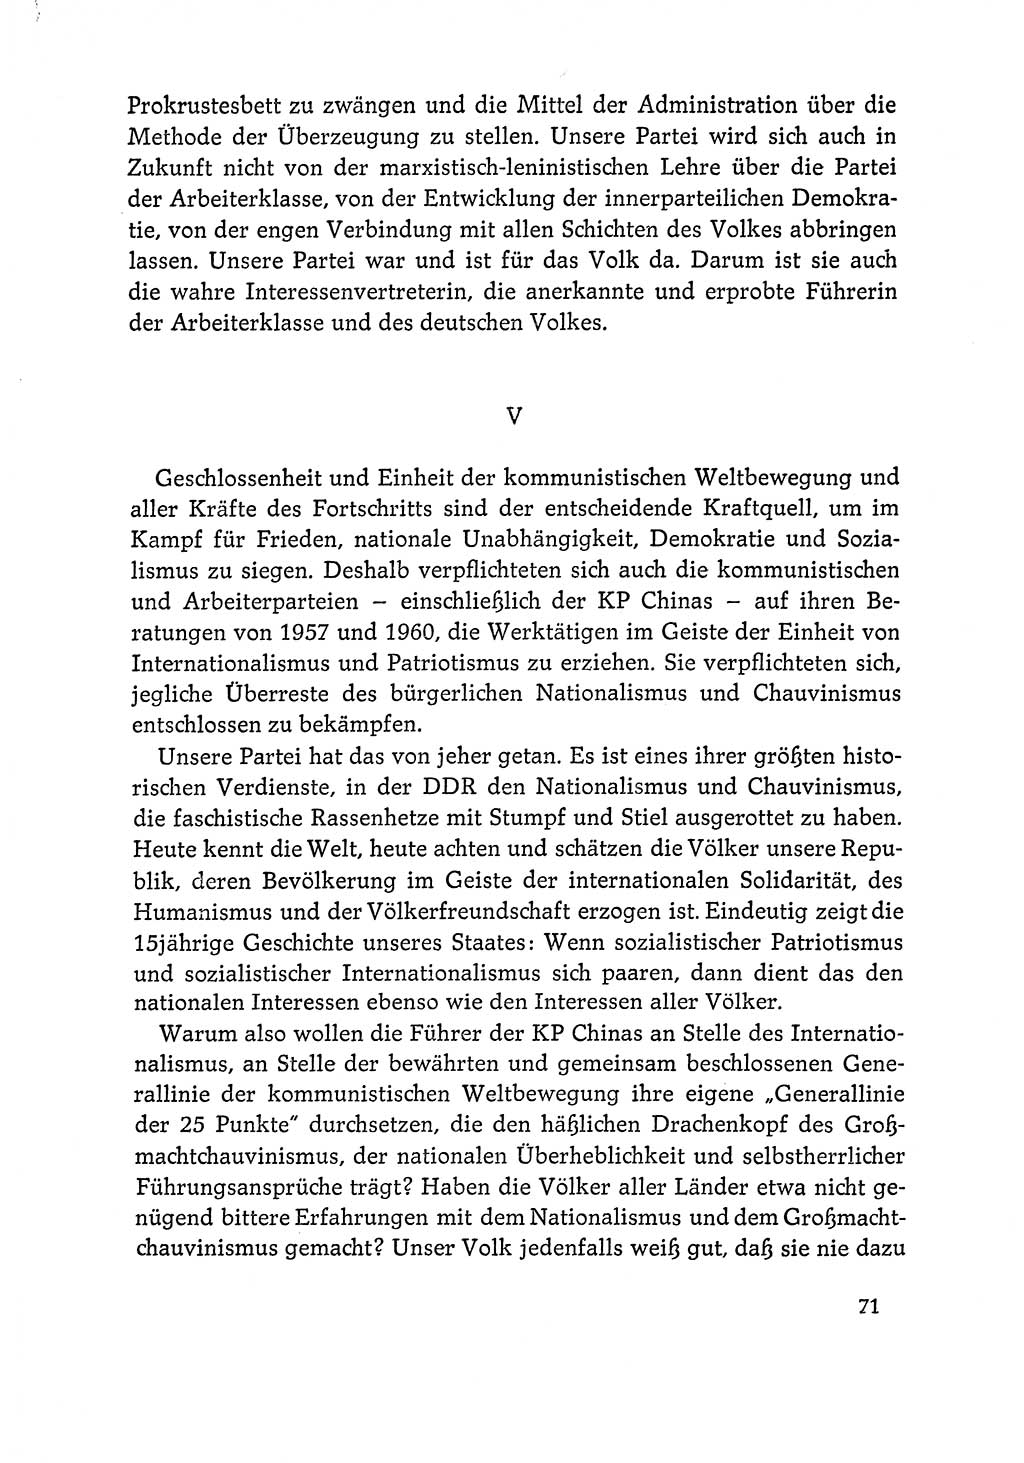 Dokumente der Sozialistischen Einheitspartei Deutschlands (SED) [Deutsche Demokratische Republik (DDR)] 1964-1965, Seite 71 (Dok. SED DDR 1964-1965, S. 71)